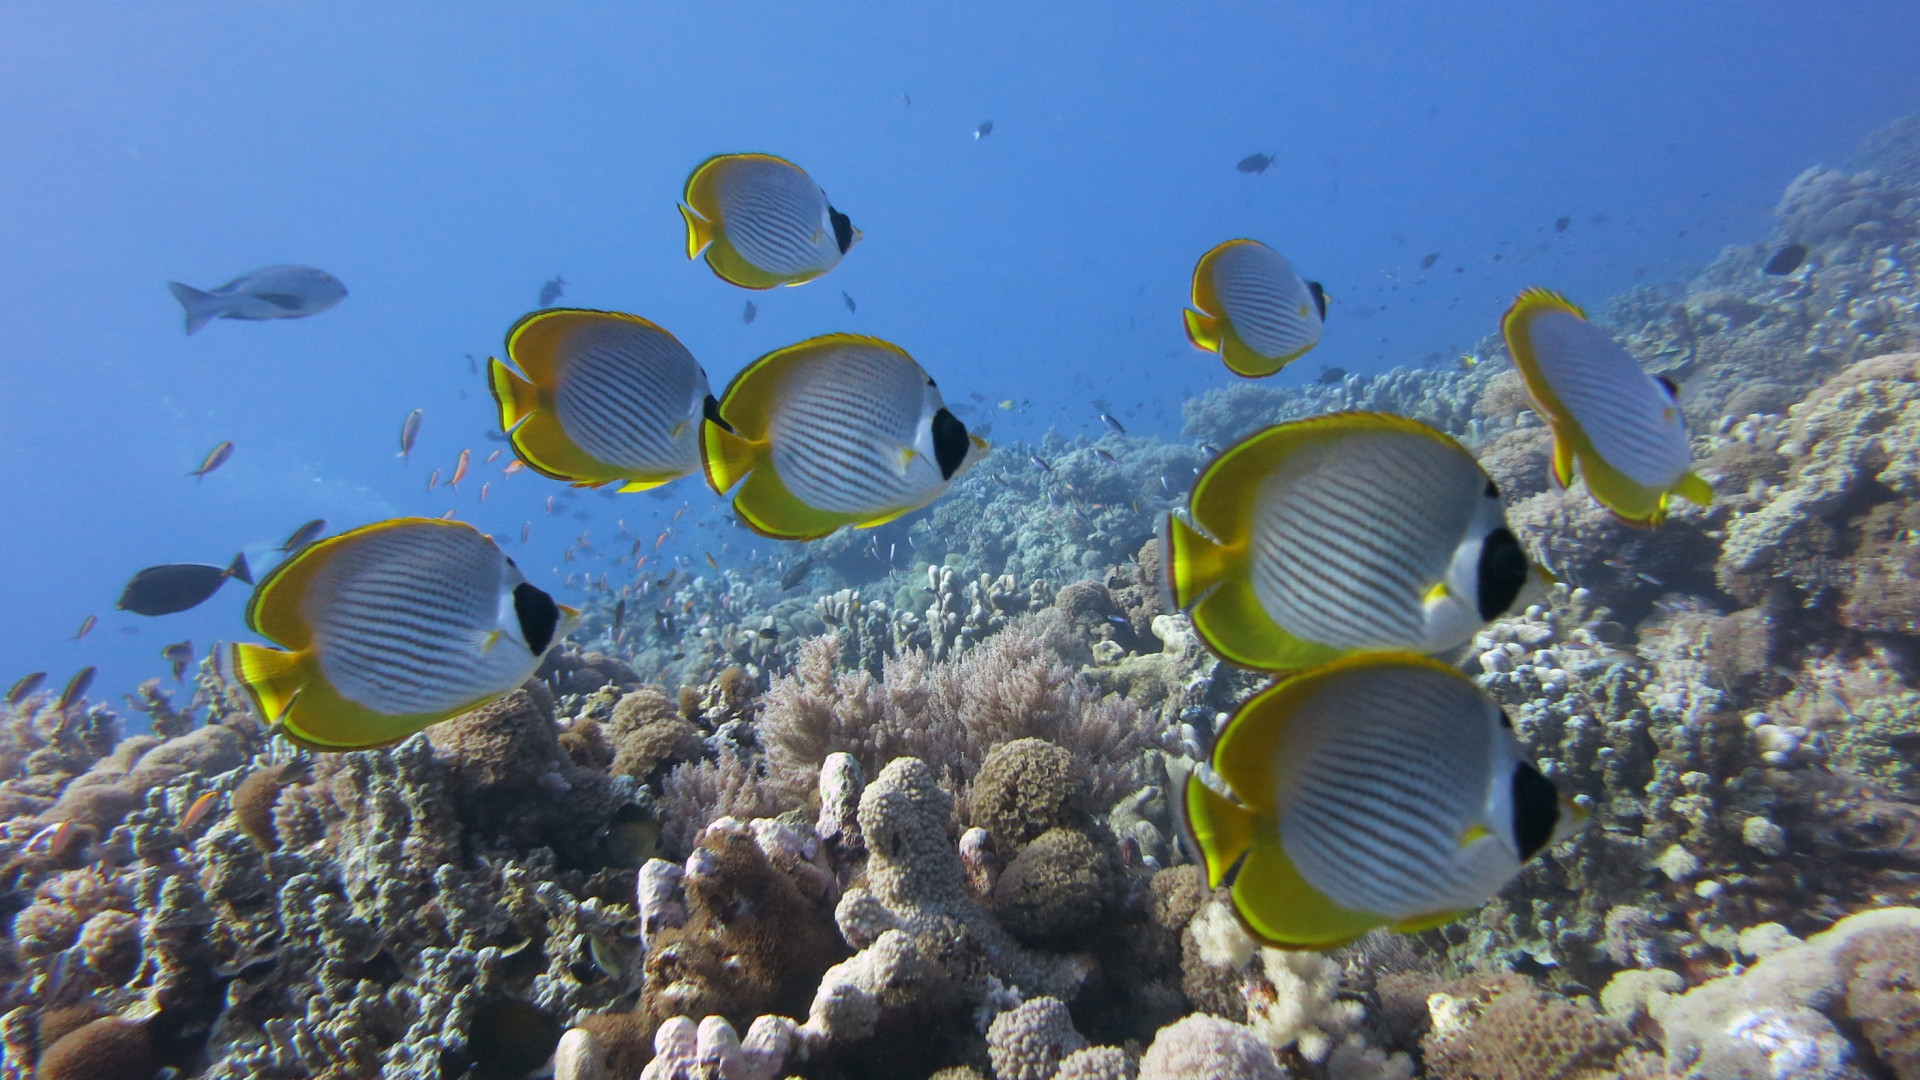 unterwasser hd wallpaper,fisch,unter wasser,meeresbiologie,korallenrifffische,korallenriff